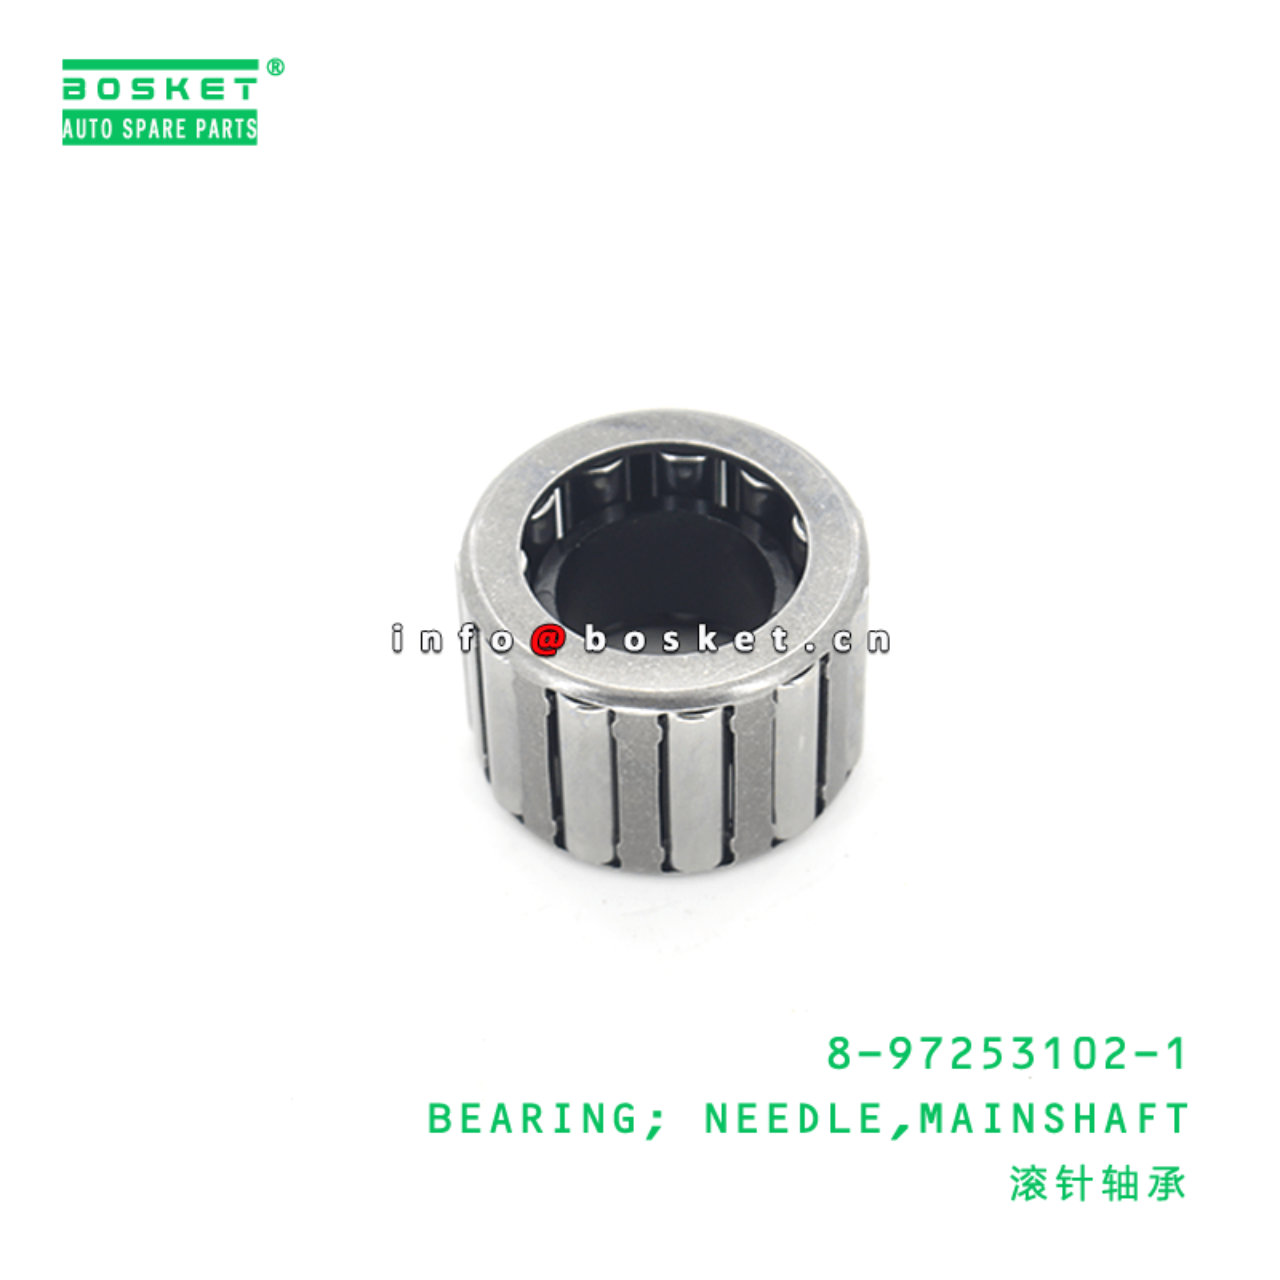 8-97253102-1 Main shaft Needle Bearing 8972531021 Suitable for ISUZU NPS 